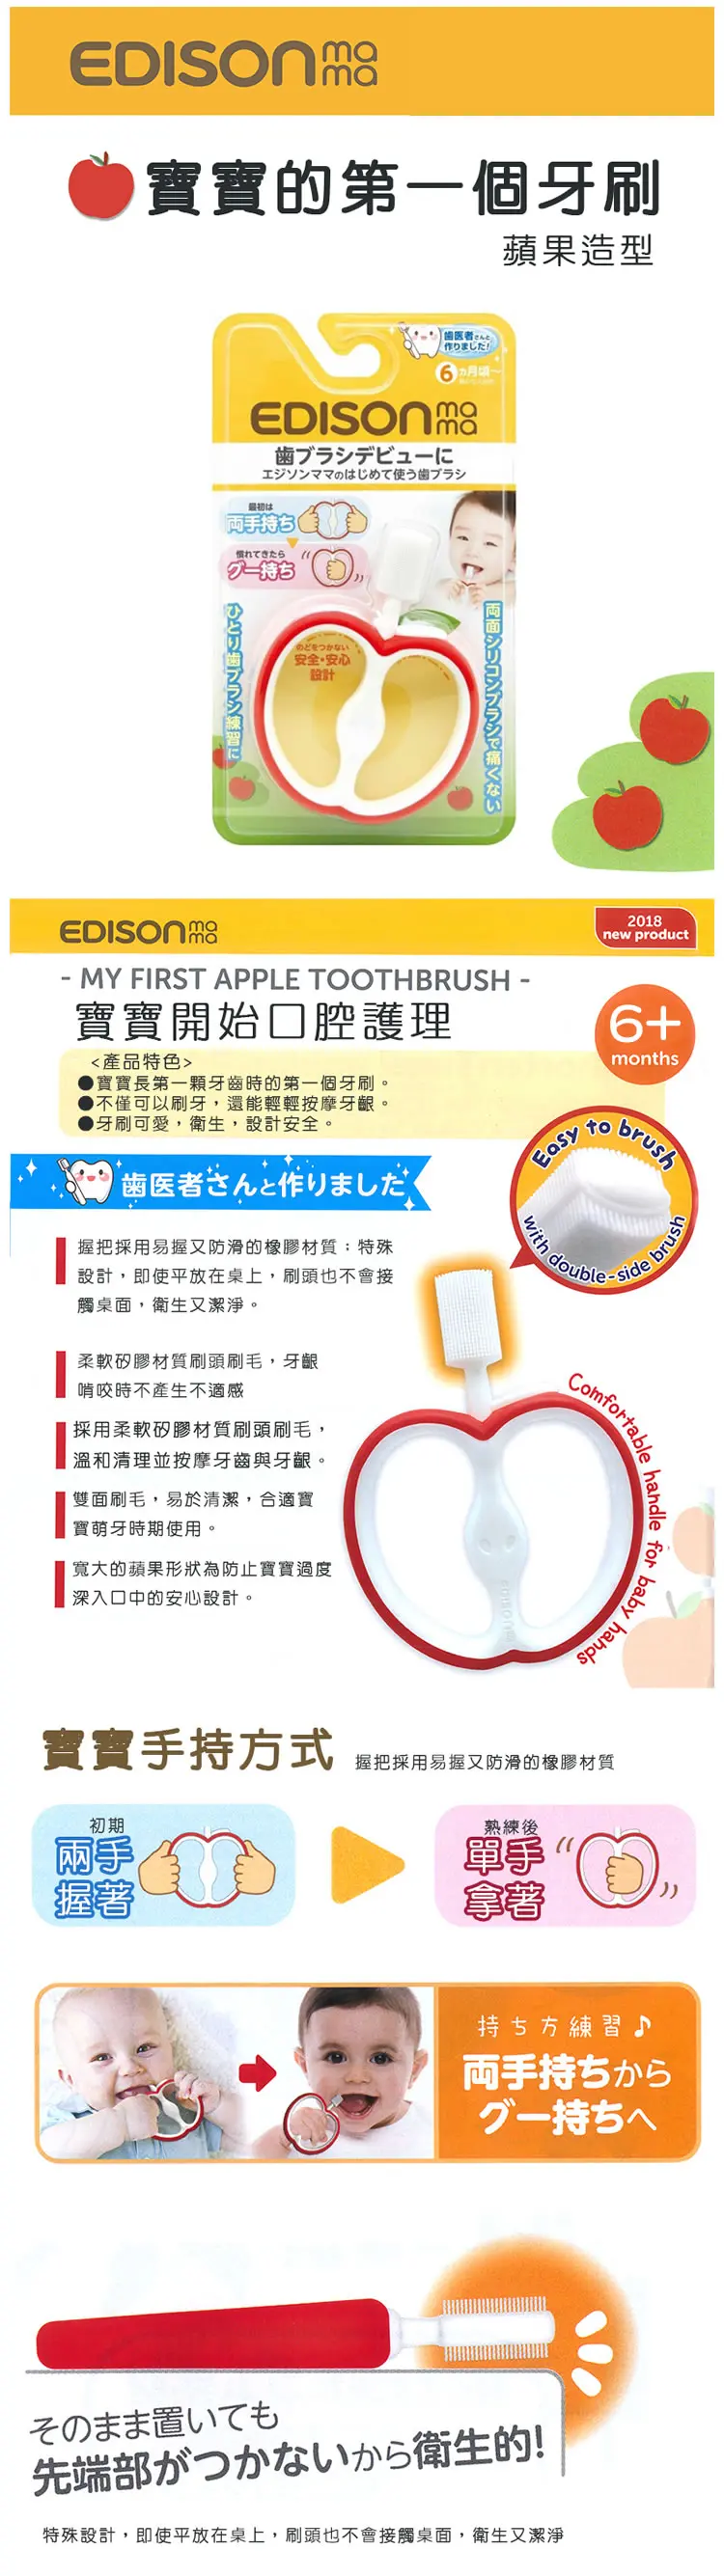 Edison 宝宝的第一个牙刷-苹果型